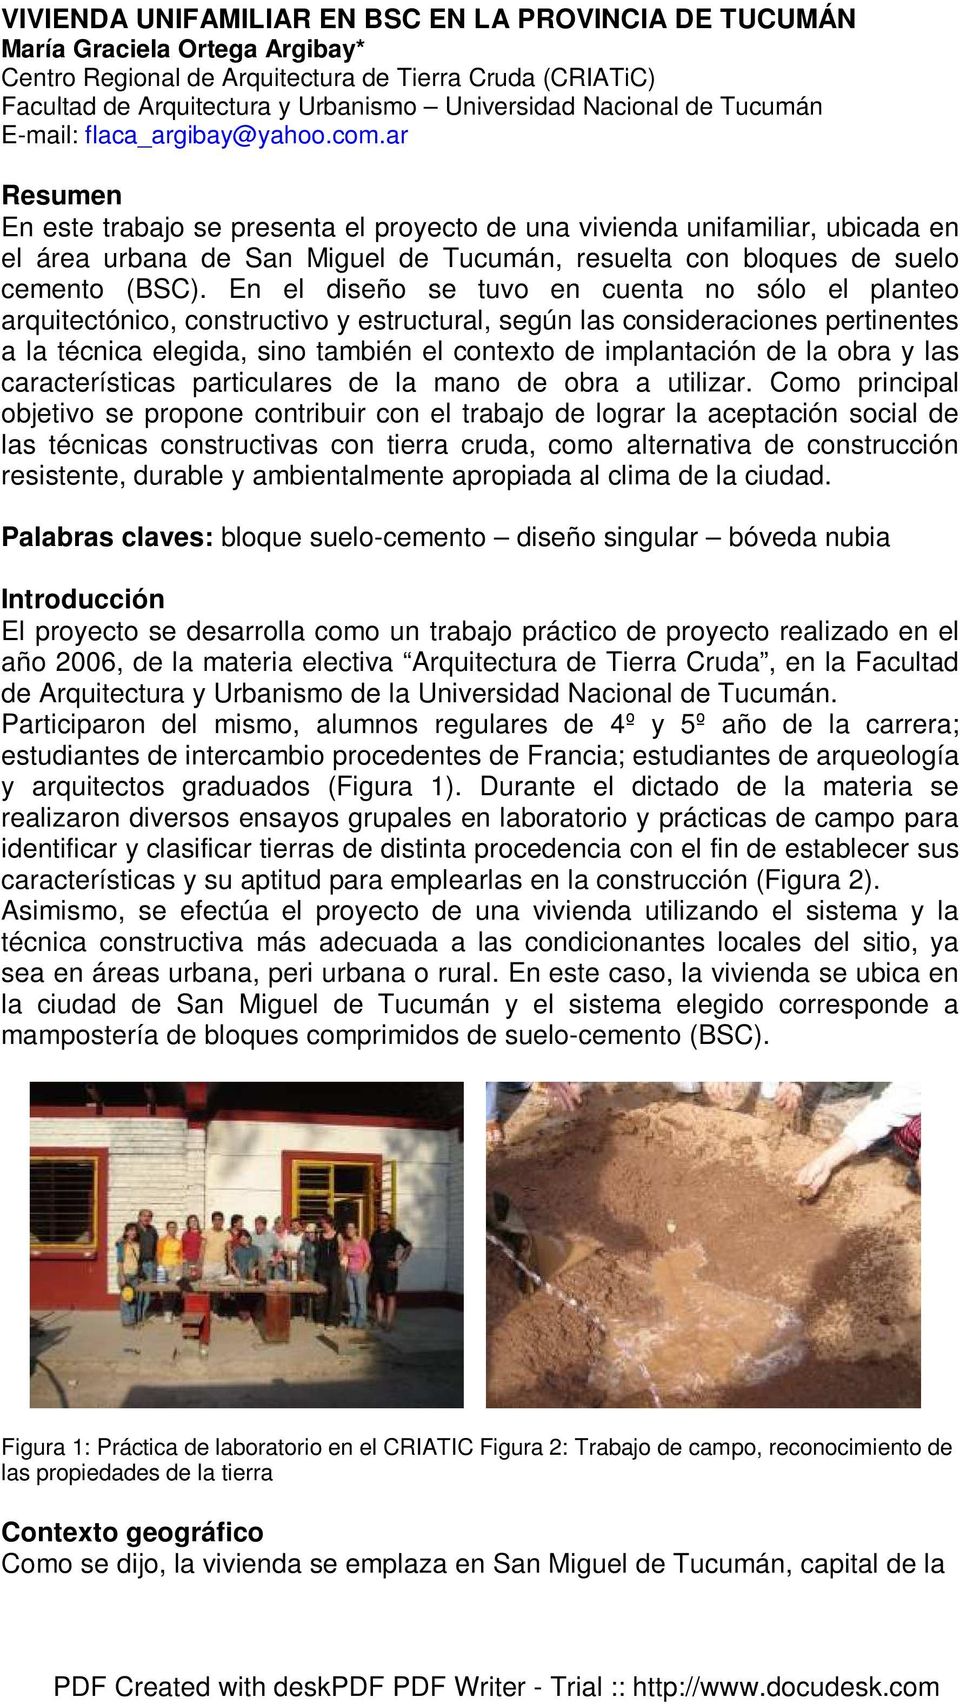 ar Resumen En este trabajo se presenta el proyecto de una vivienda unifamiliar, ubicada en el área urbana de San Miguel de Tucumán, resuelta con bloques de suelo cemento (BSC).